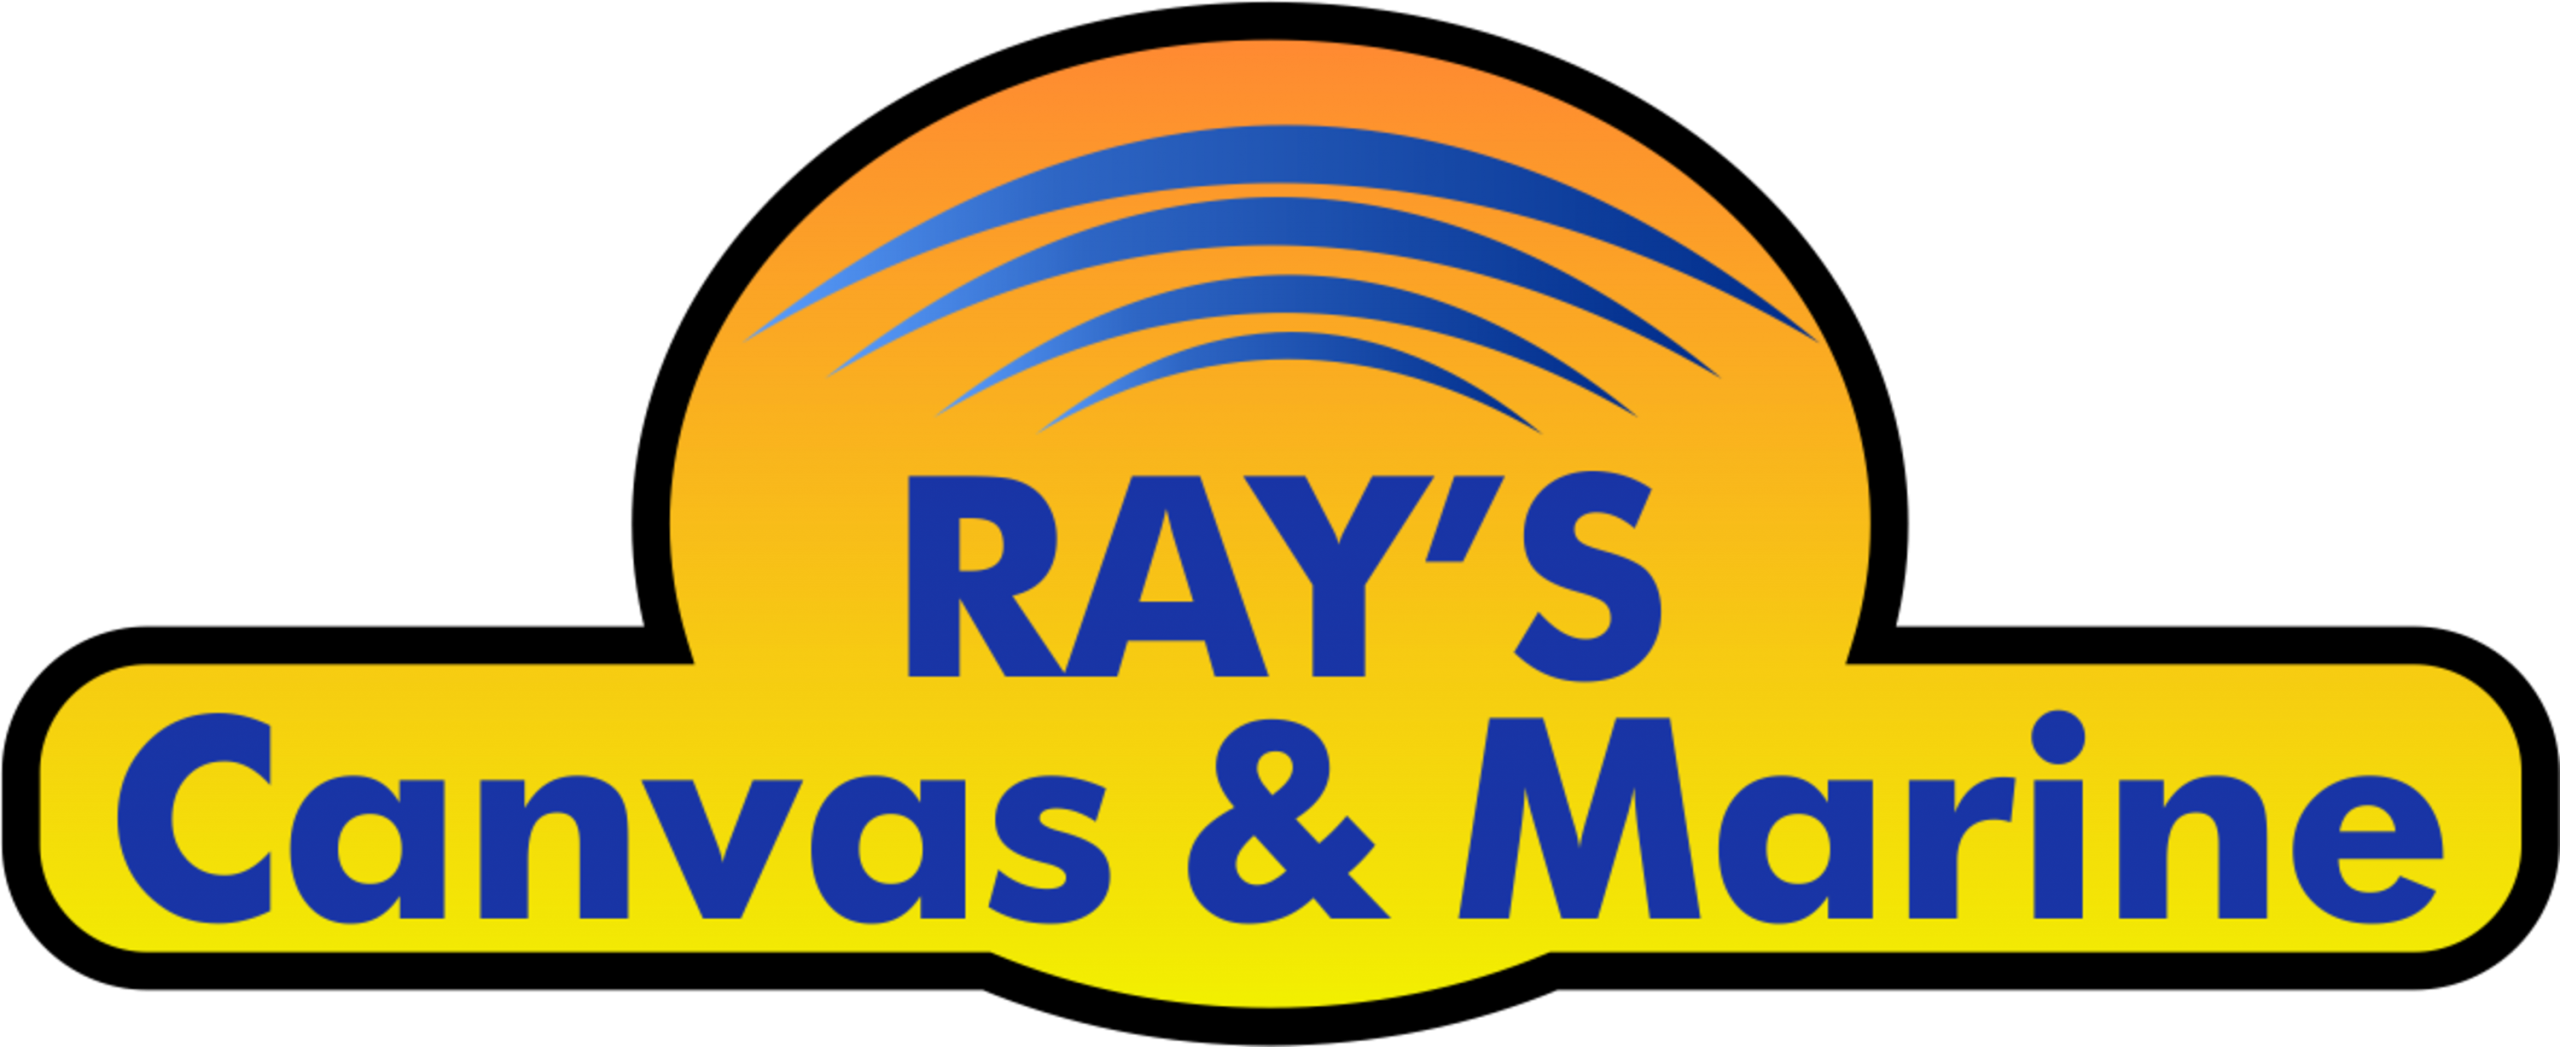 Ray’s Canvas & marine